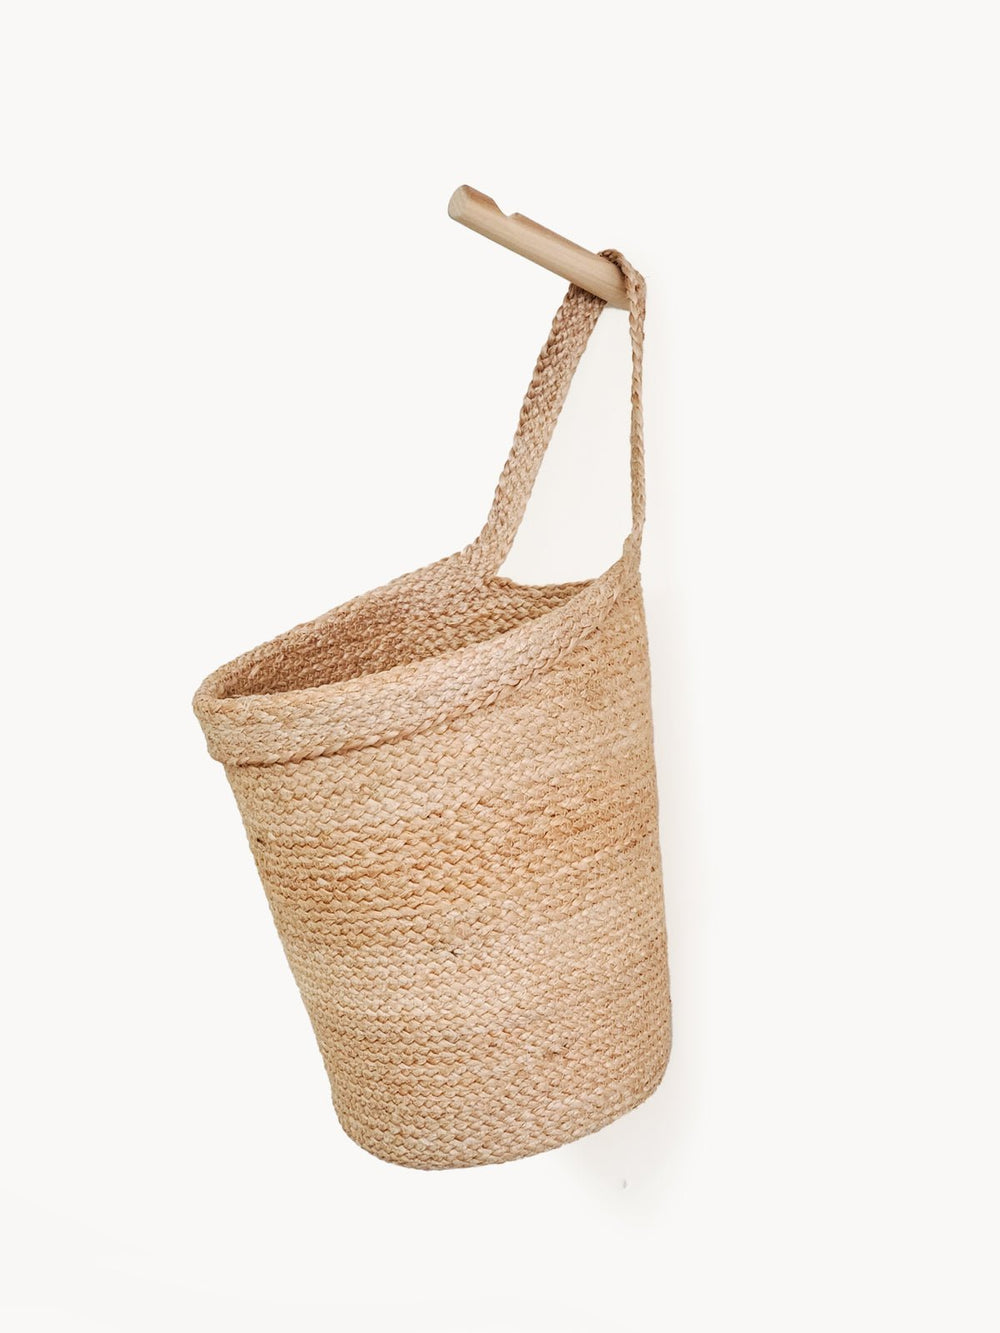 Kata Wall Hanging Basket - EcofiedHome